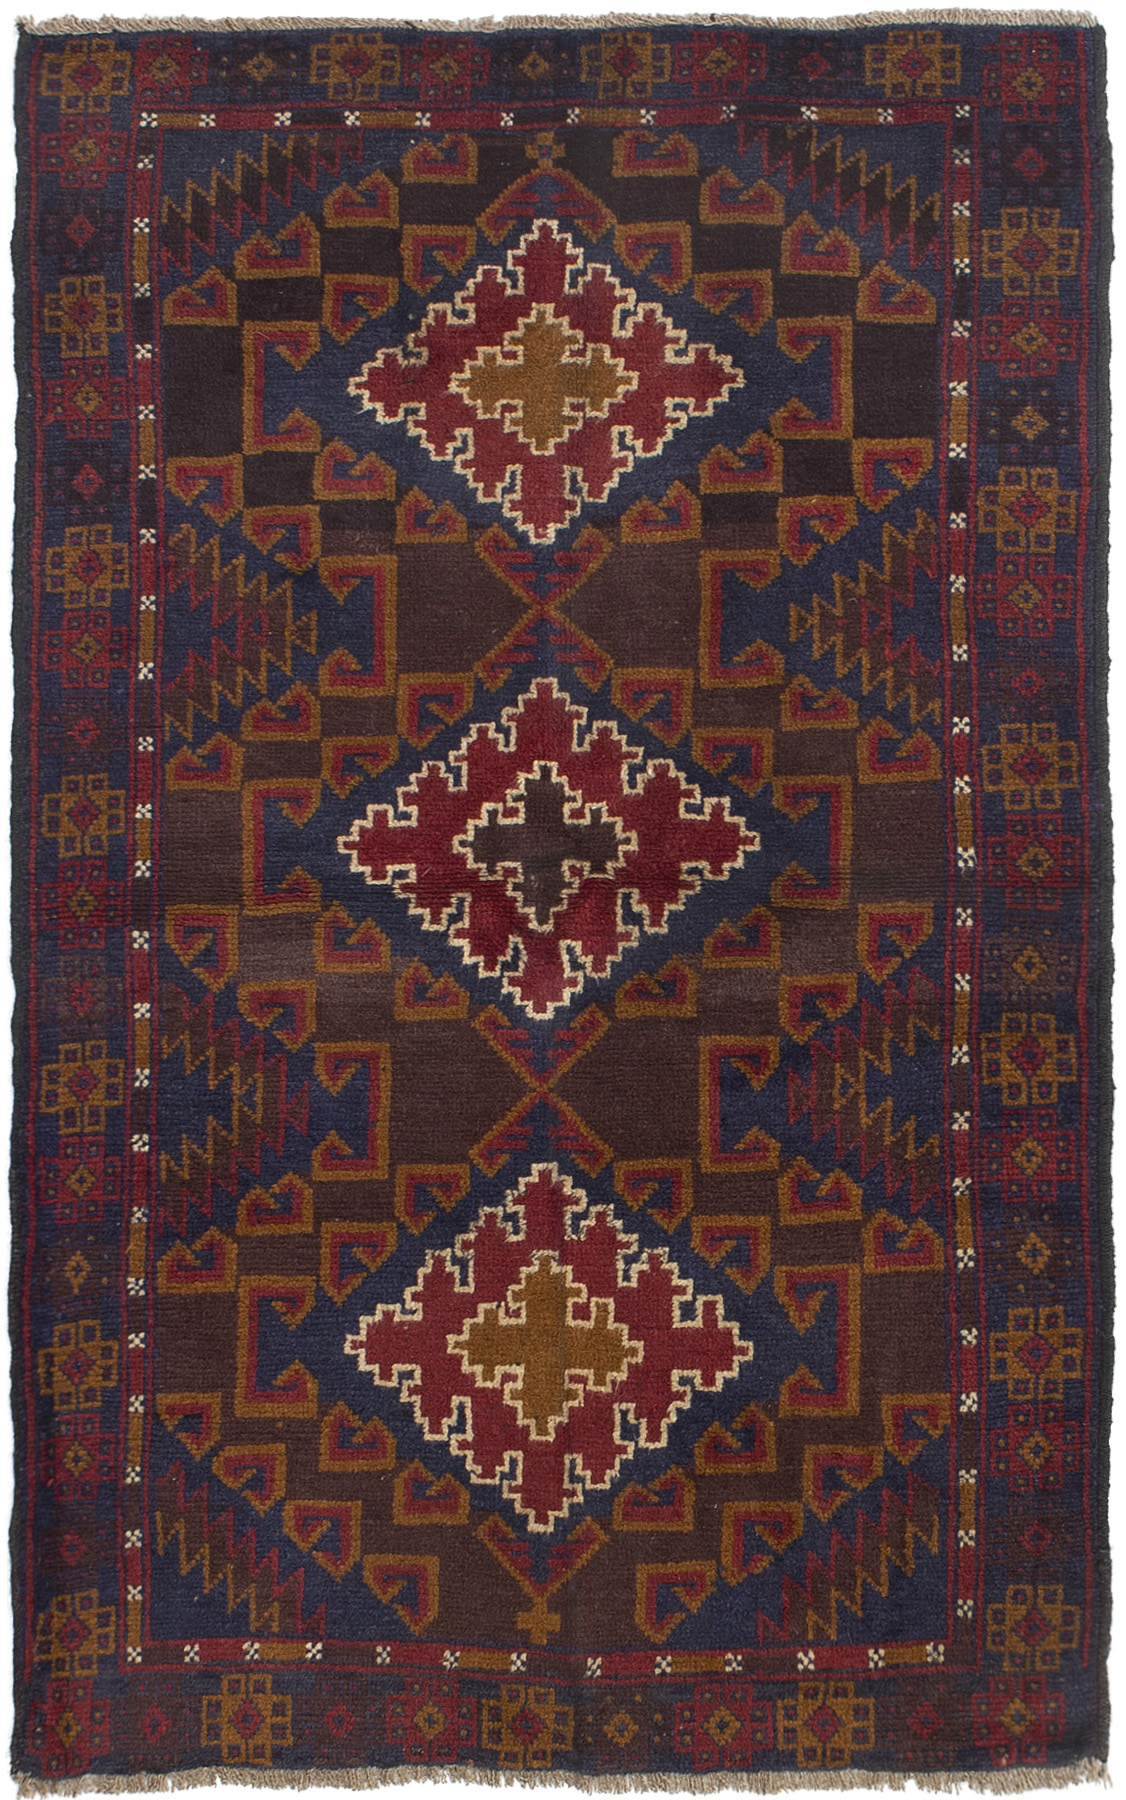 Hand-knotted Kazak Dark Navy, Red Wool Rug 3'4" x 5'7"  Size: 3'4" x 5'7"  